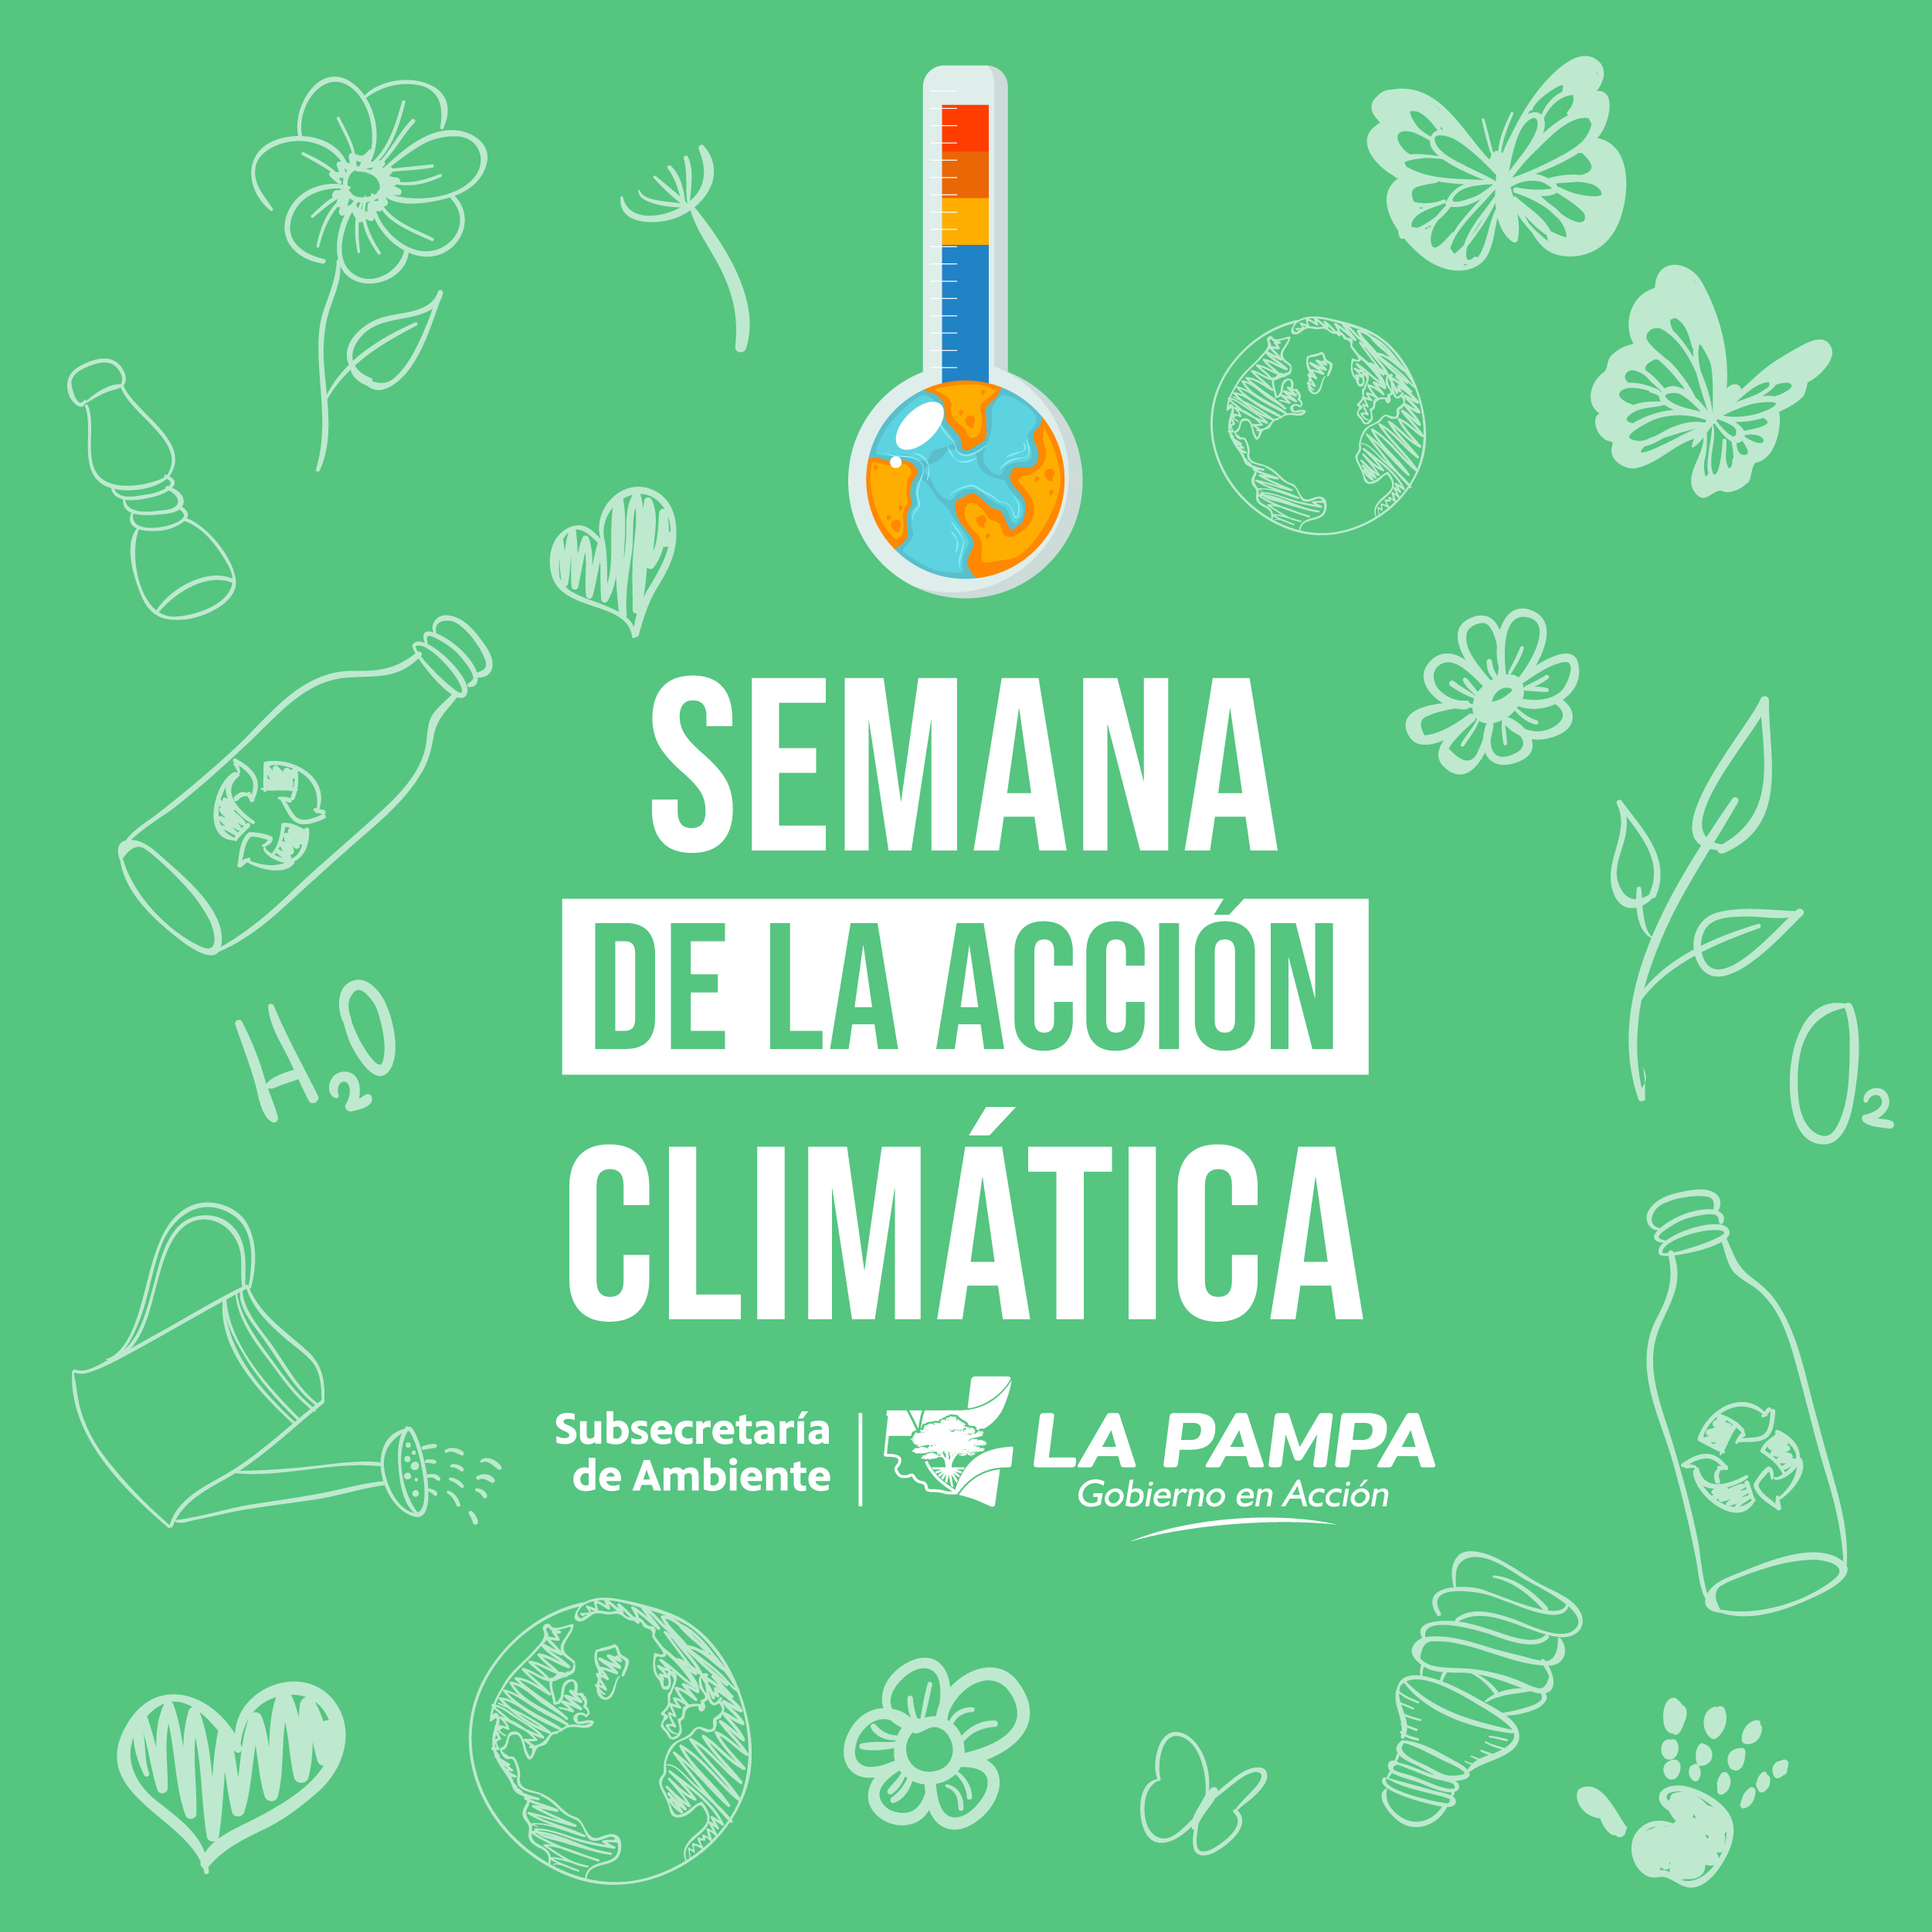 Se viene la Semana de la Acción Climática en La Pampa  